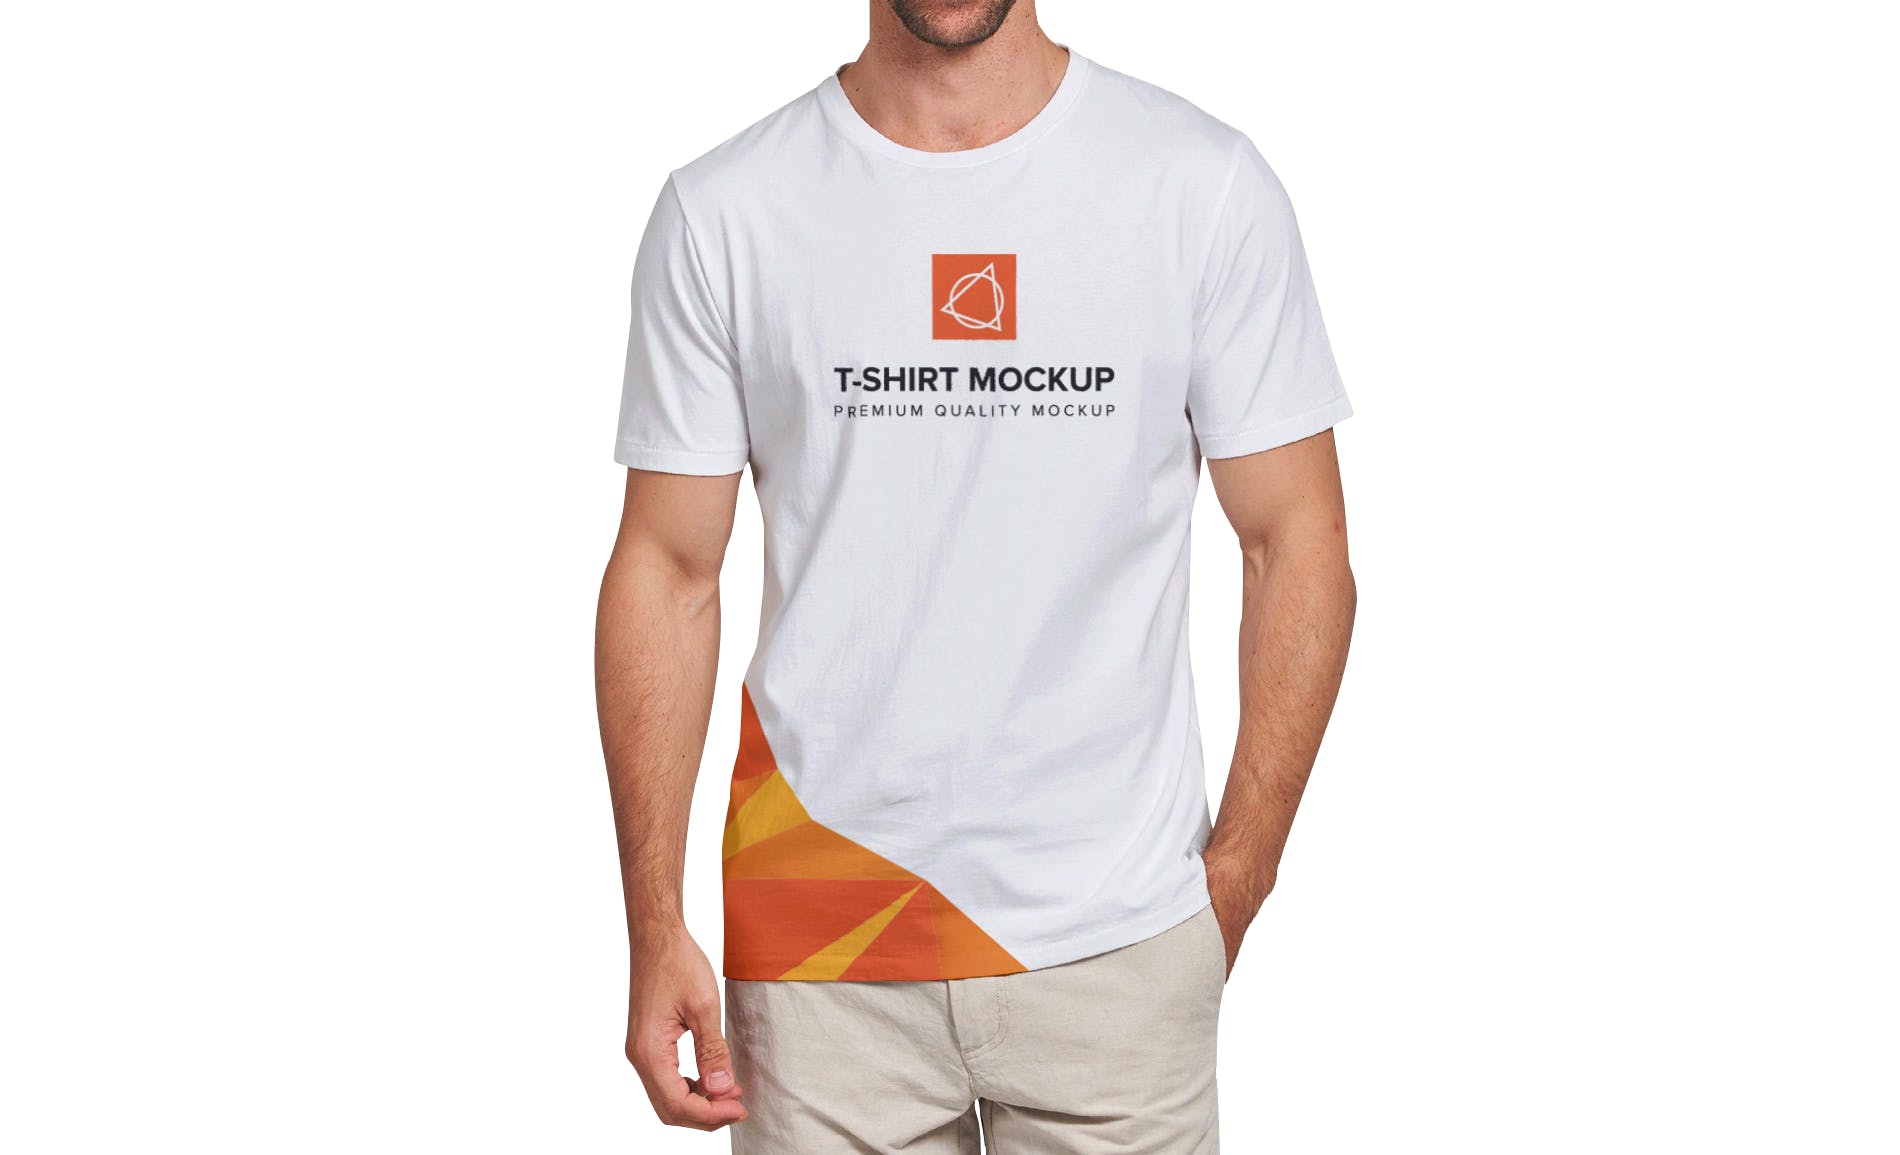 男士T恤印花设计效果图样机16设计网精选v03 T-shirt Mockup Vol 03插图(4)